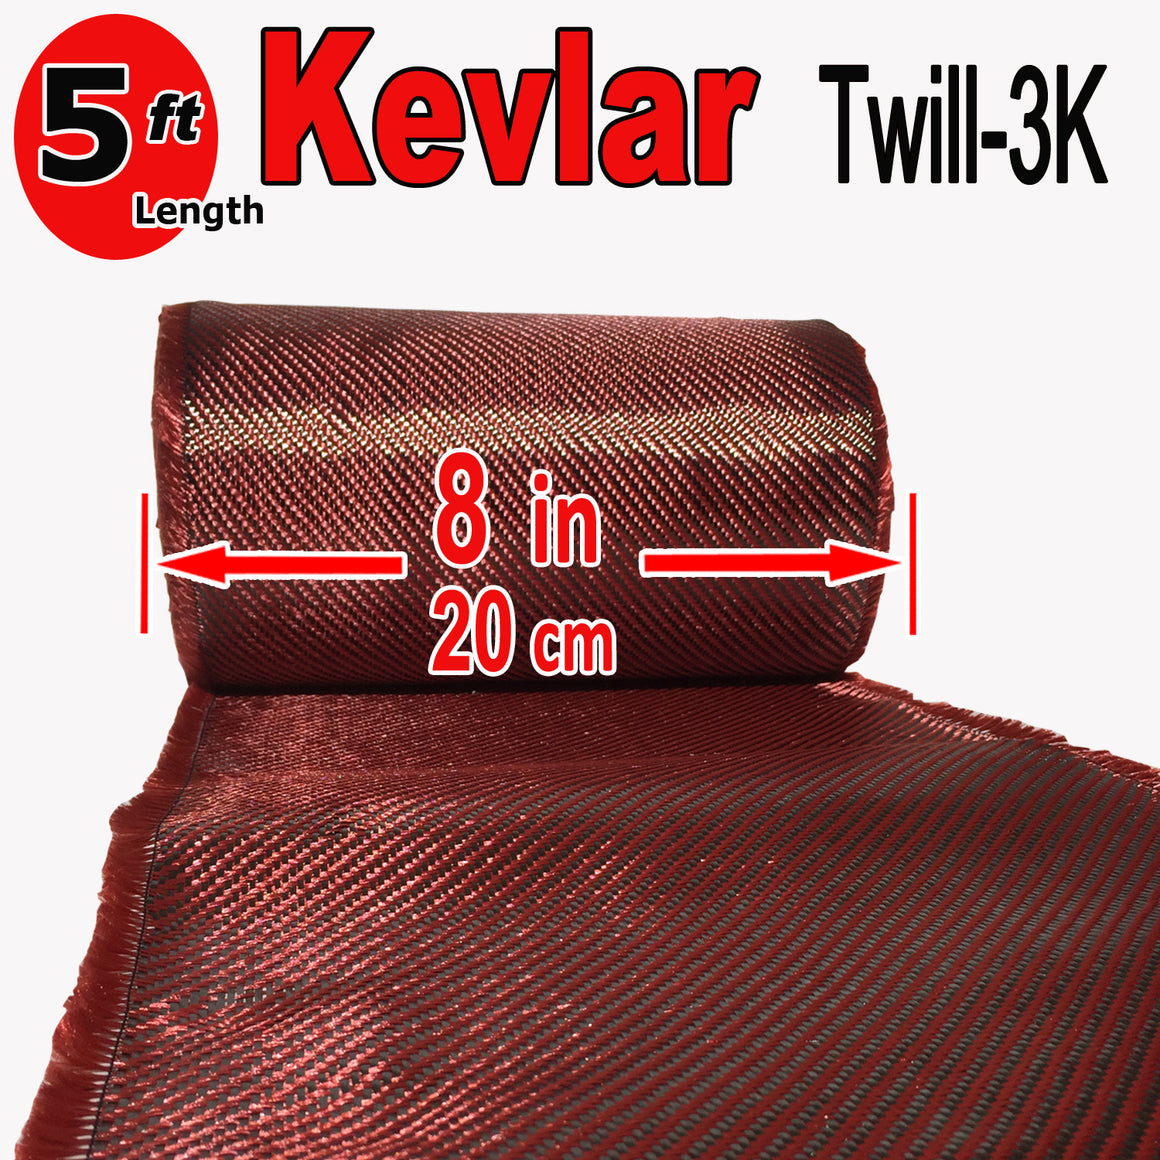 KEVLAR ARAMID  Fabric - 8 in x 5 ft - Twill  - 240g/m2 - 3K TOW